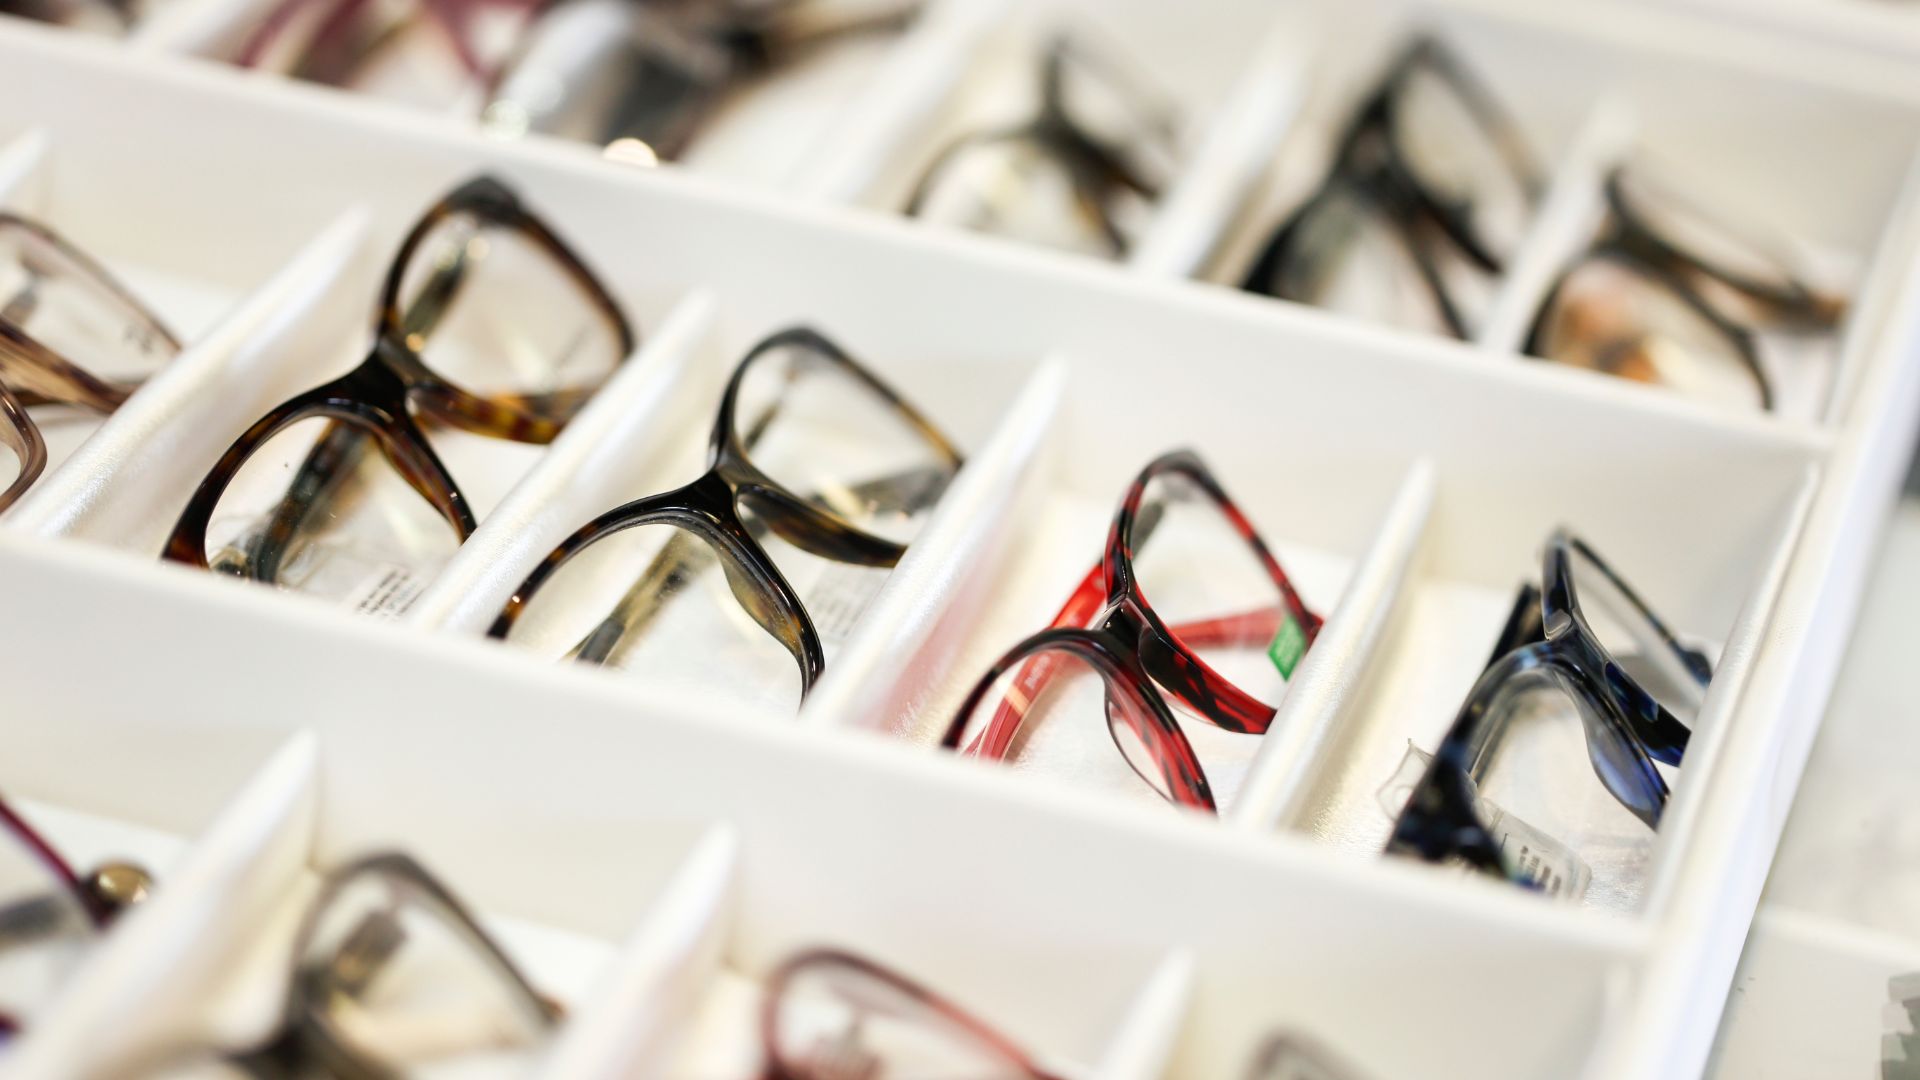 Your Favorite Analog Camera Brand Has An Eyewear Line: Polaroid Eyewear (Polaroid Glasses)